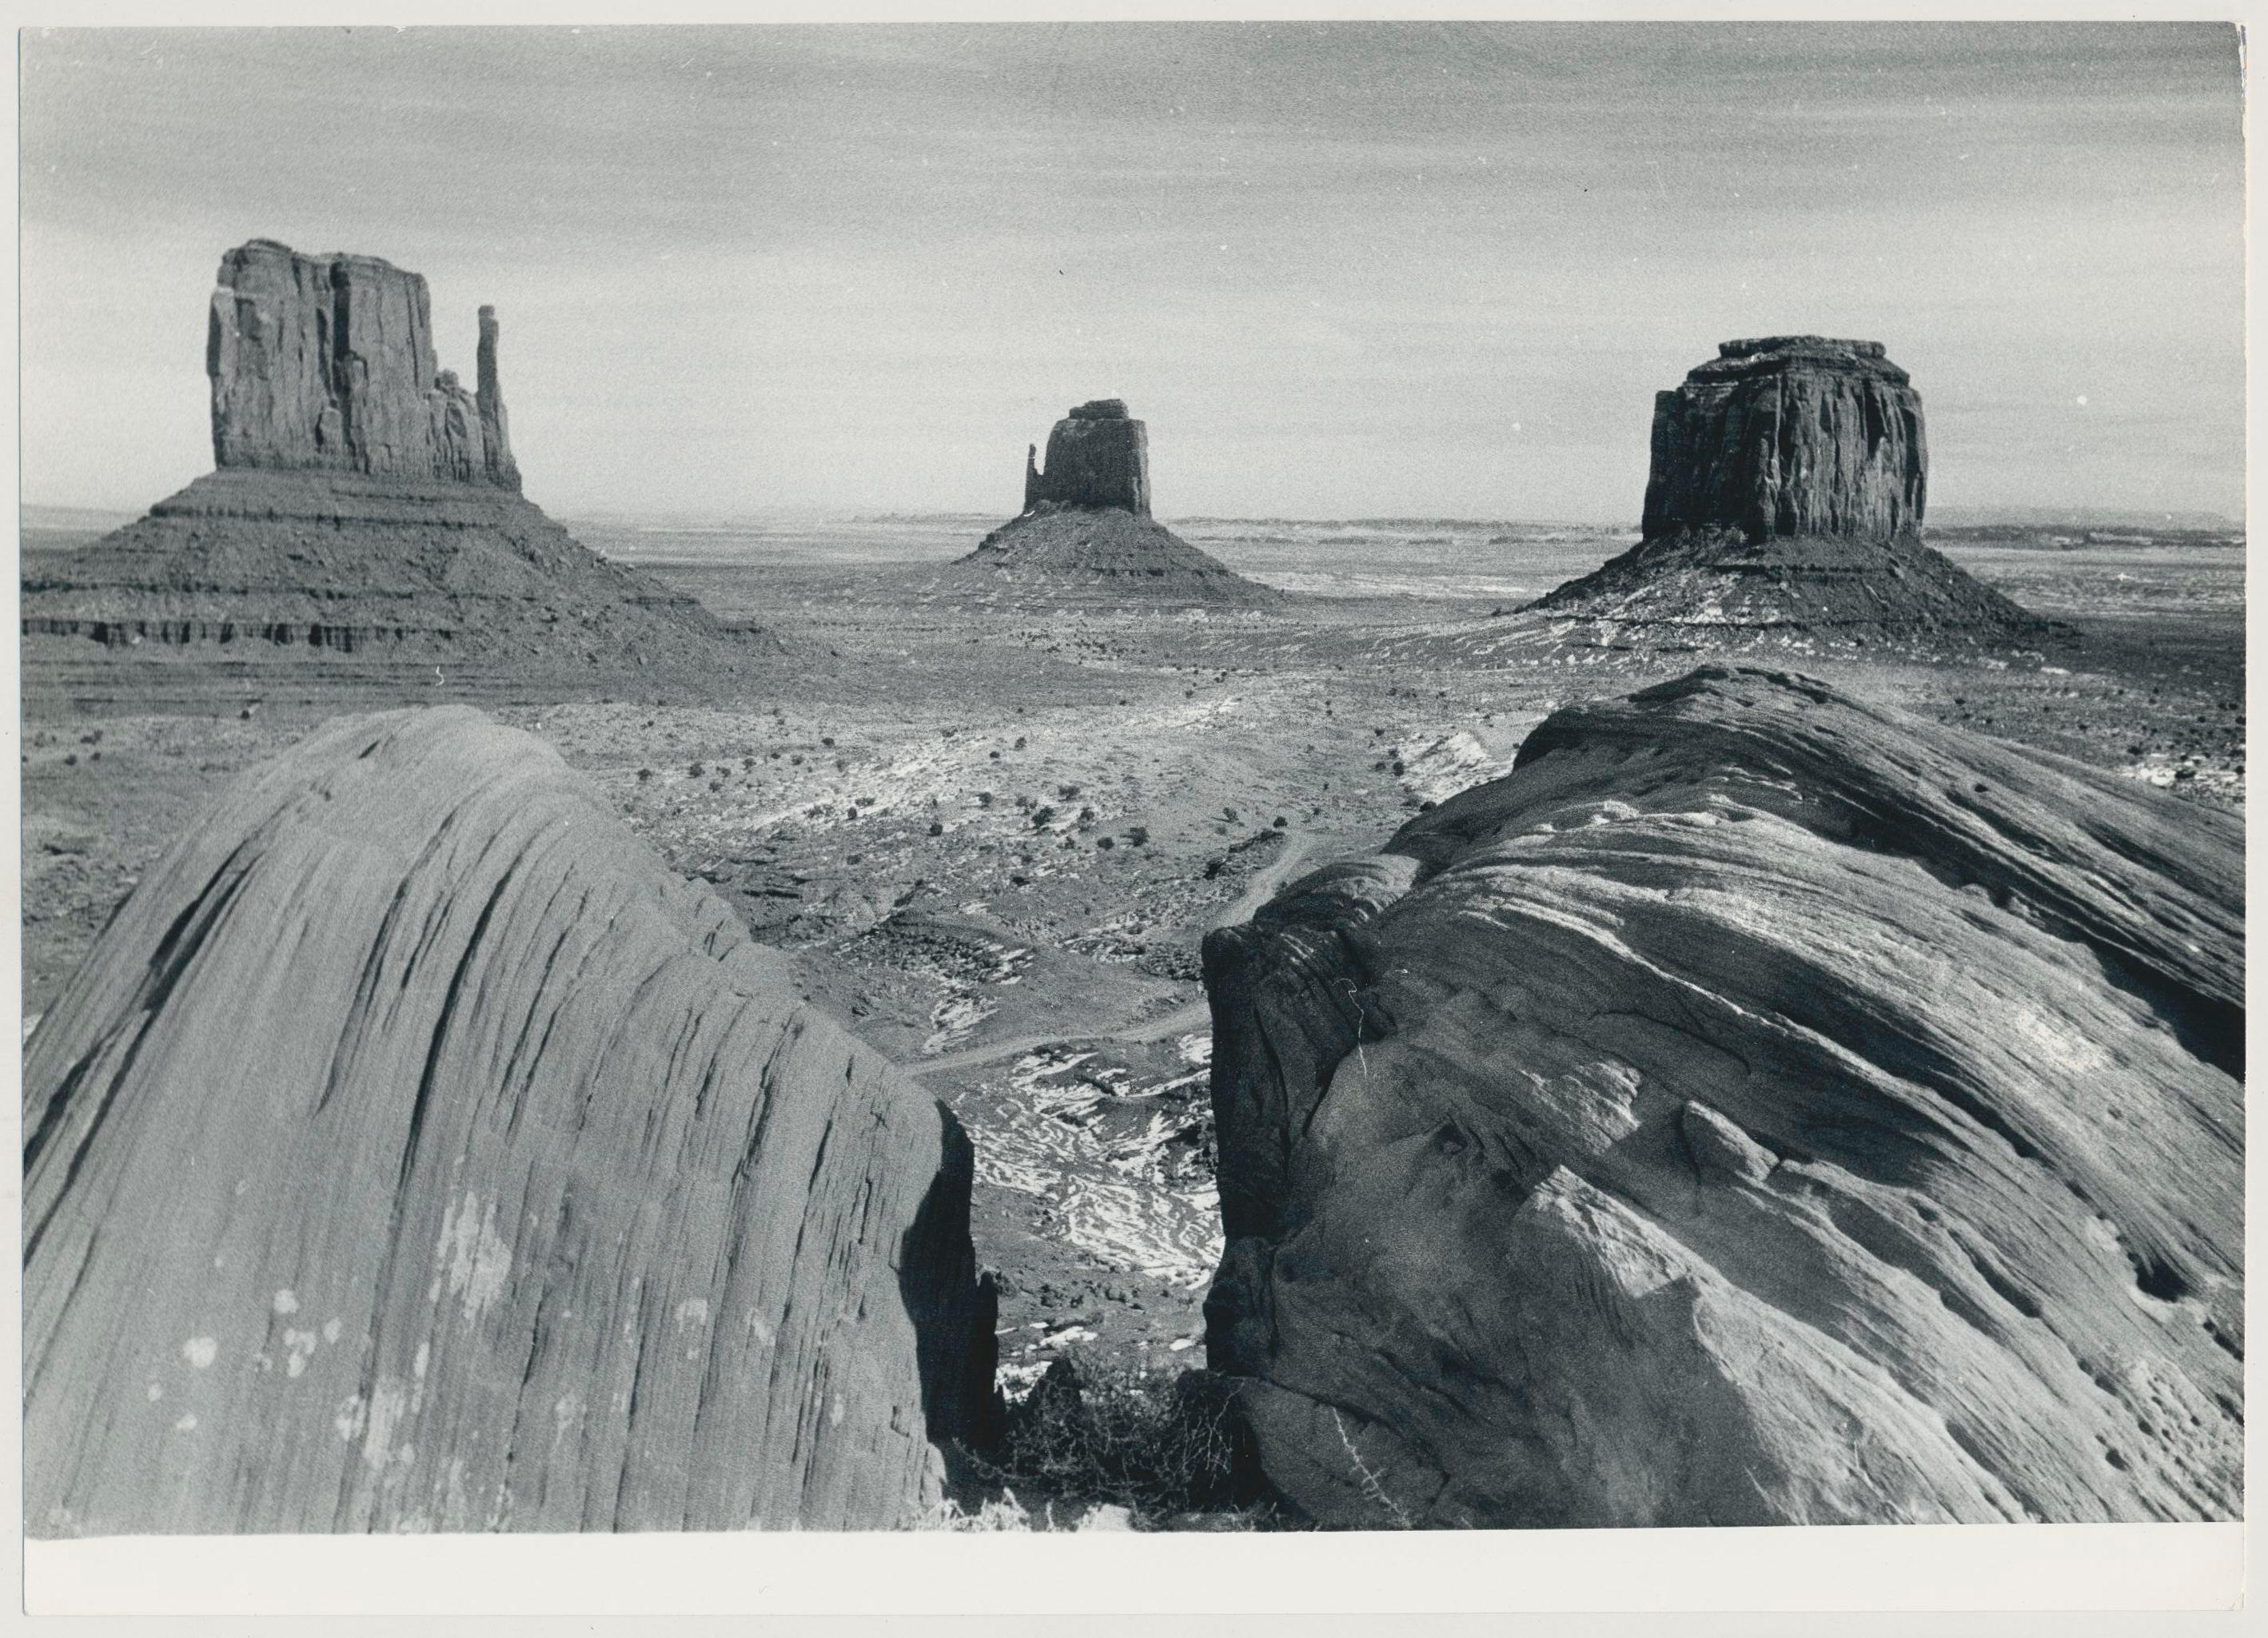 Black and White Photograph Erich Andres - Monument Valley, Utah/Arizona, noir et blanc, États-Unis, 23 x 16,8 cm